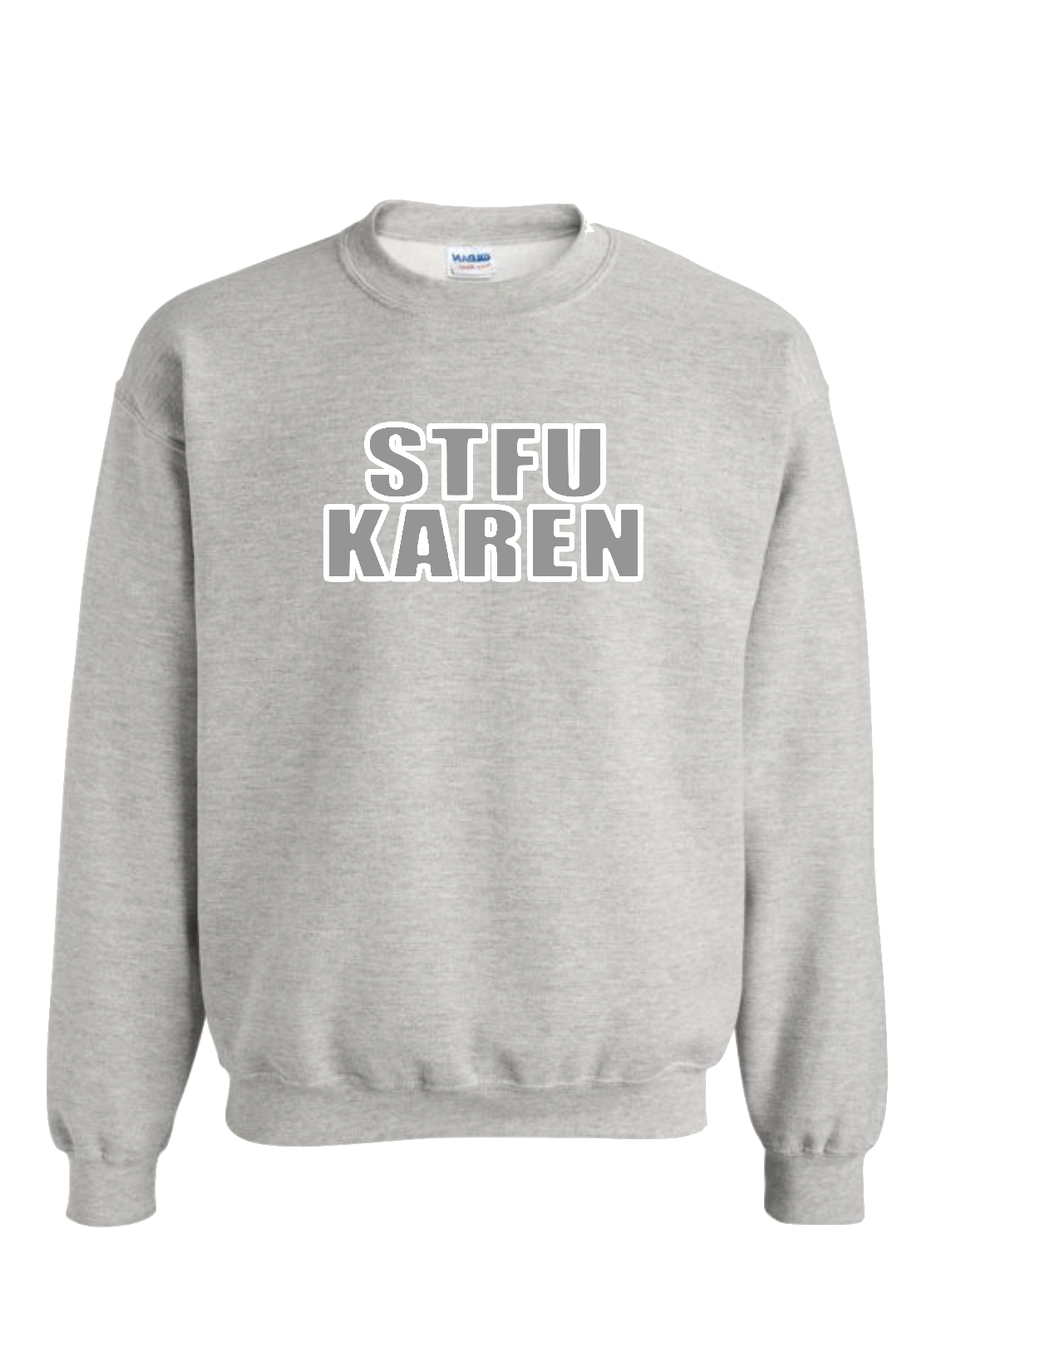 STFU Karen Sweatshirt.(MORE COLORS)